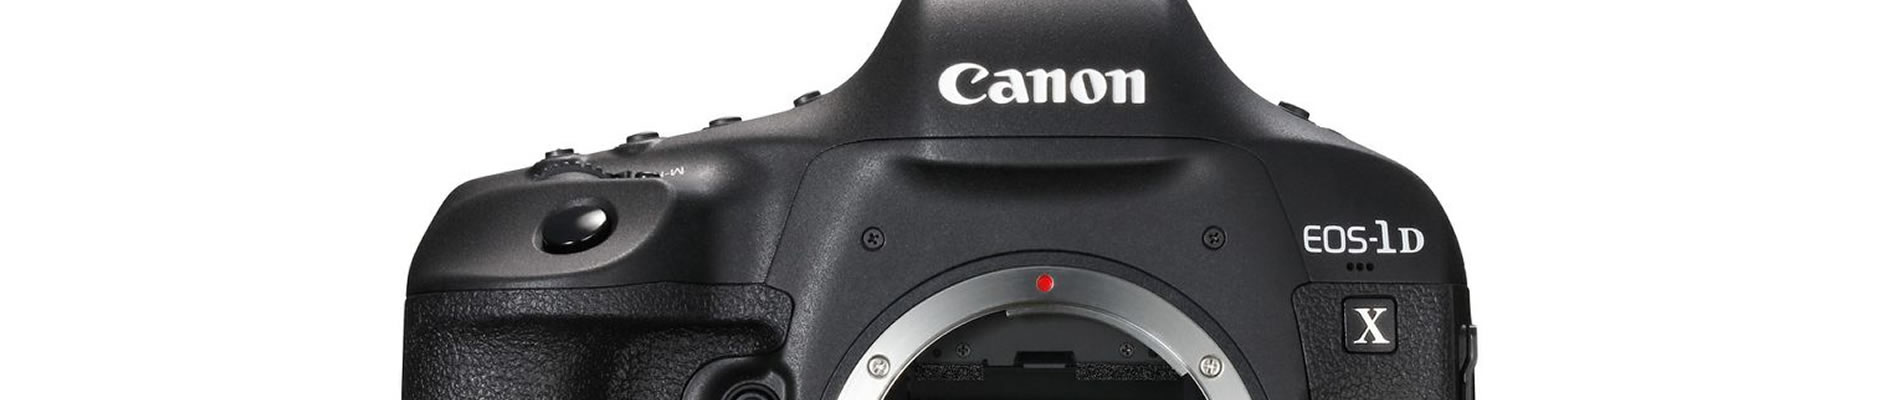 Canon Professional